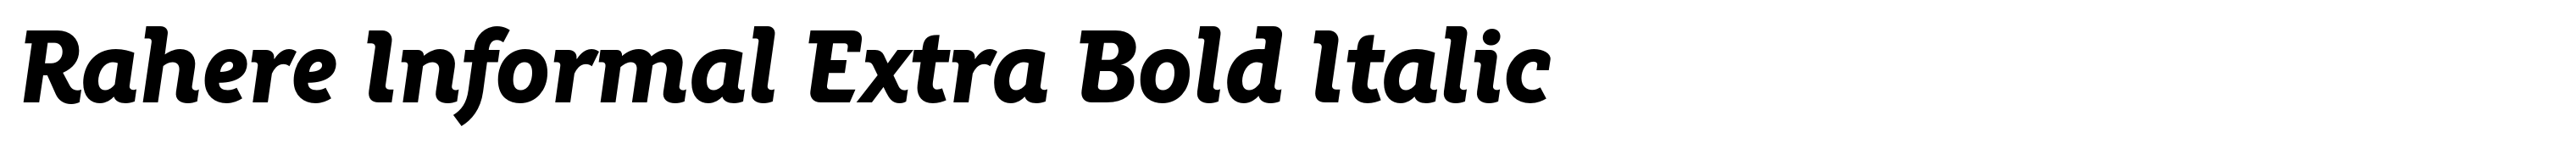 Rahere Informal Extra Bold Italic